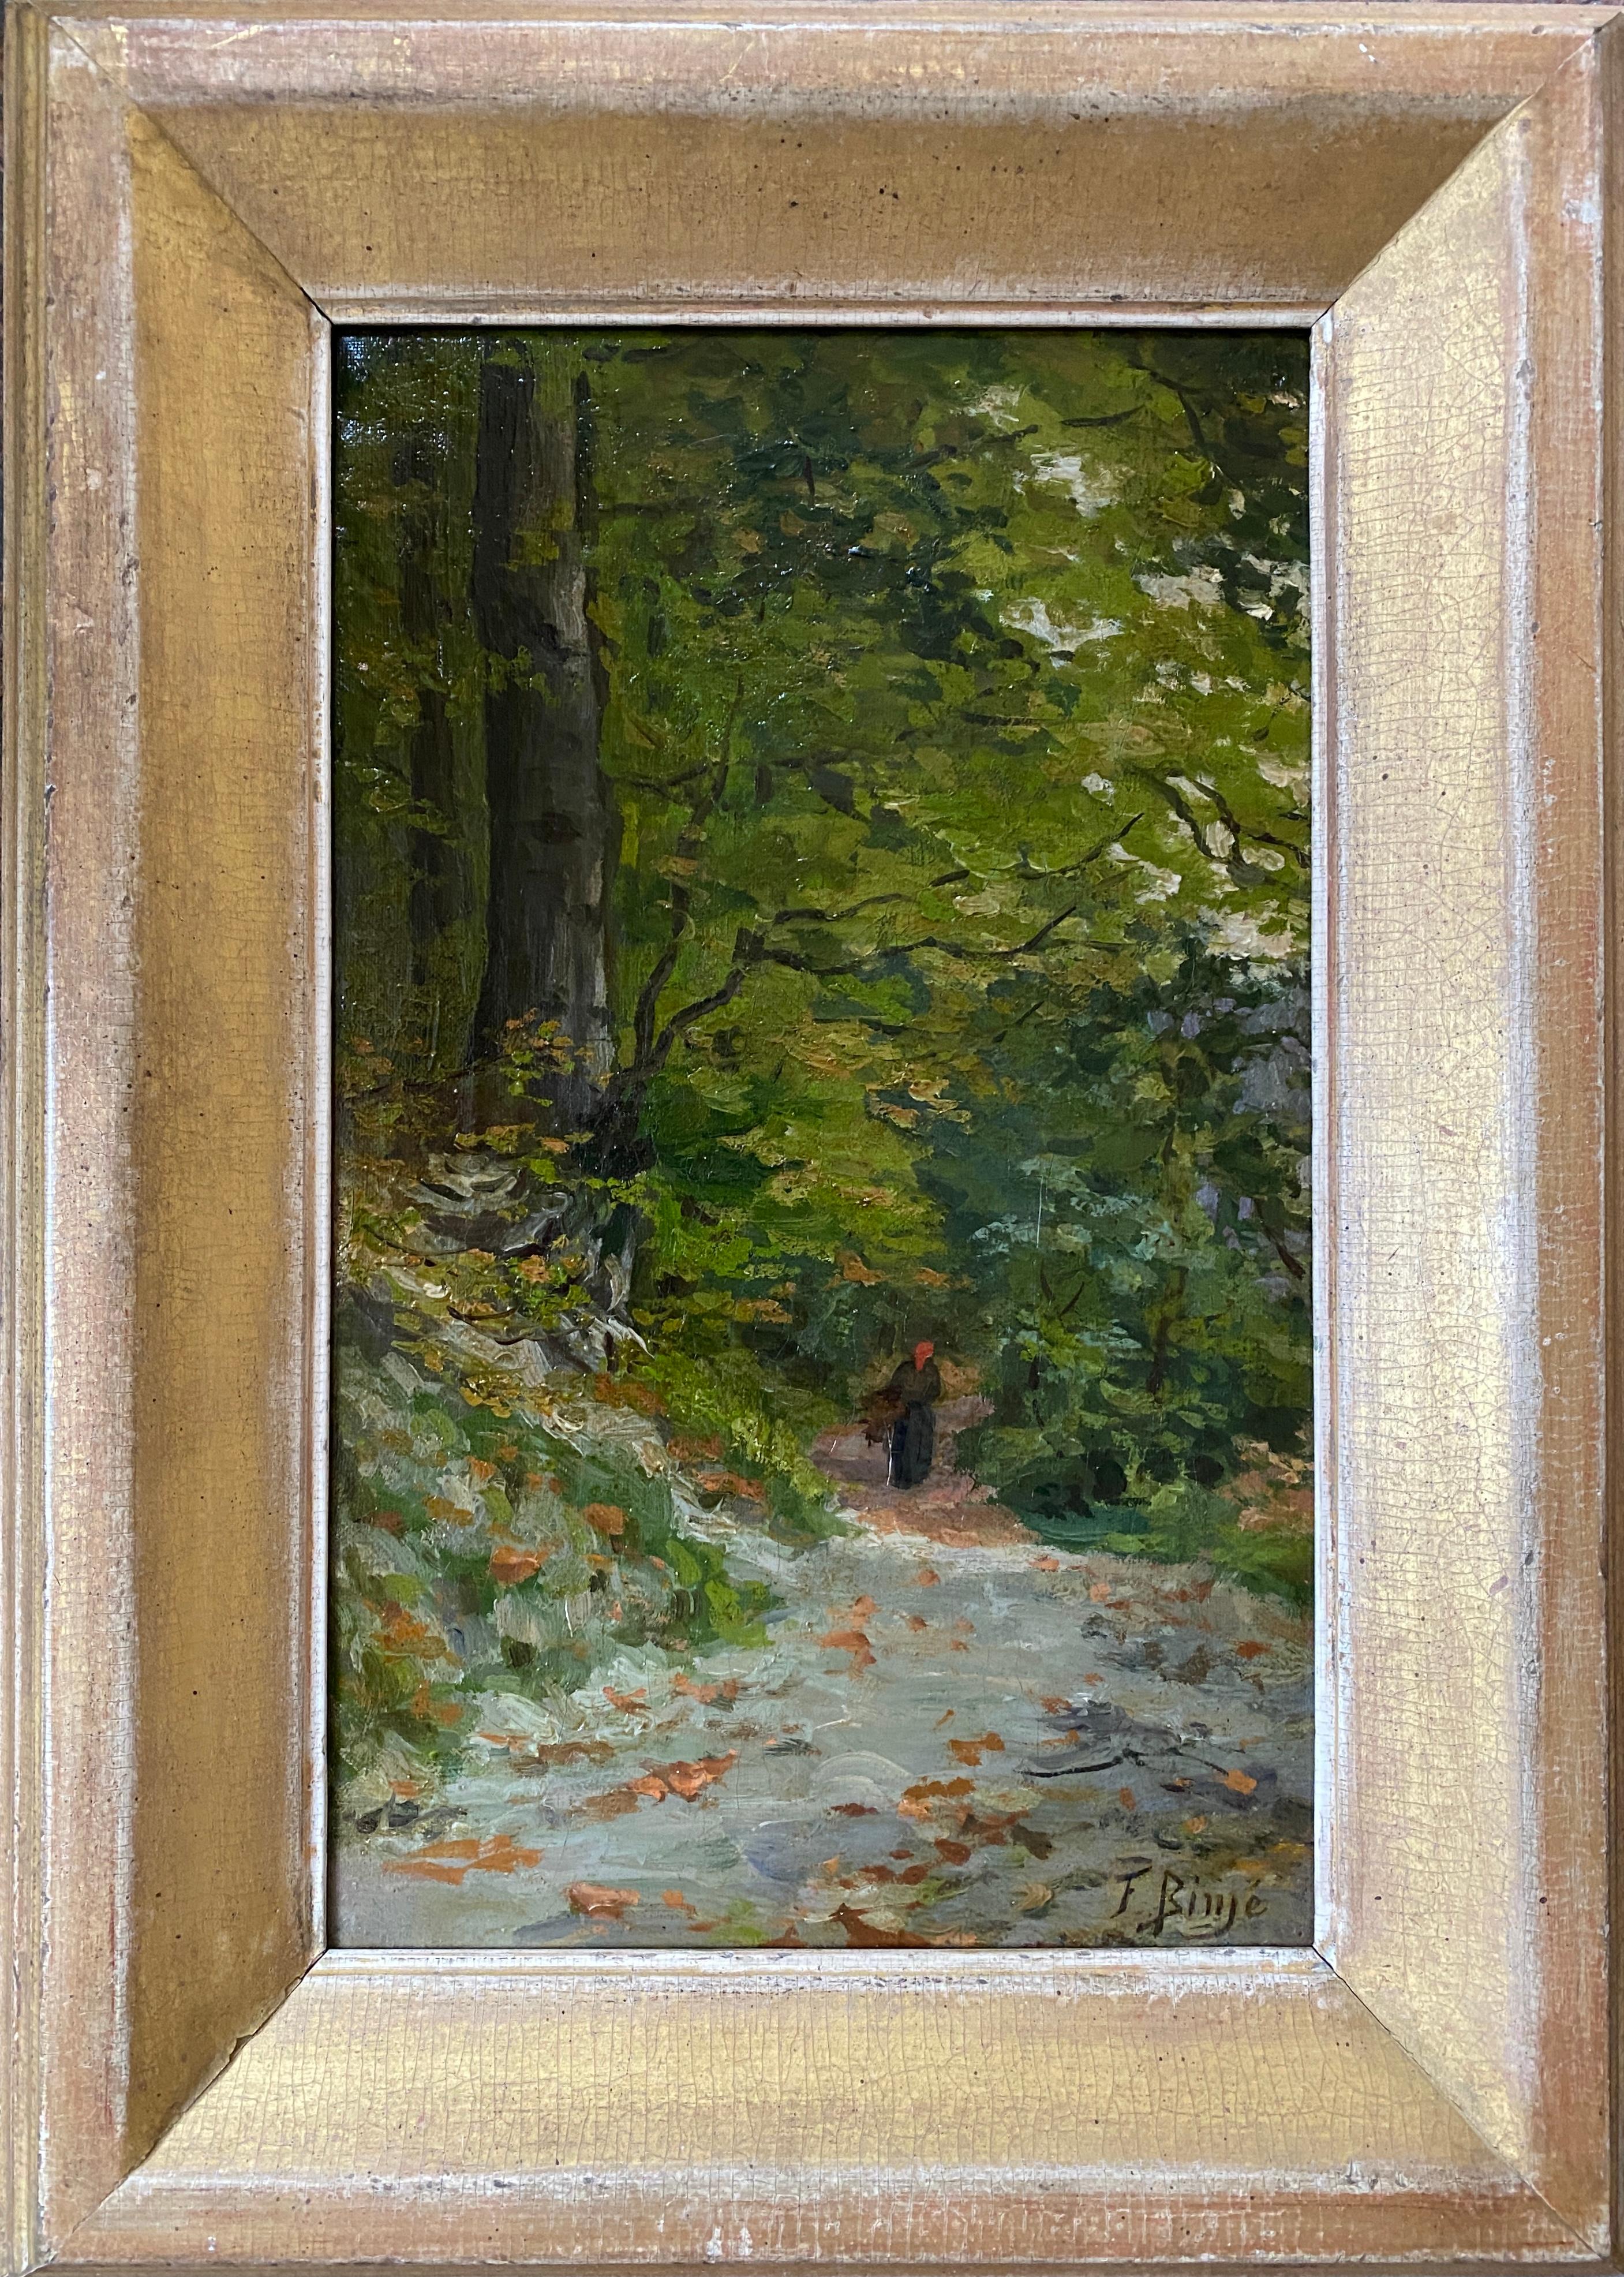 Ein Weg im Wald, Frans Binjé, Luik 1835 - 1900 Brüssel, belgischer Maler